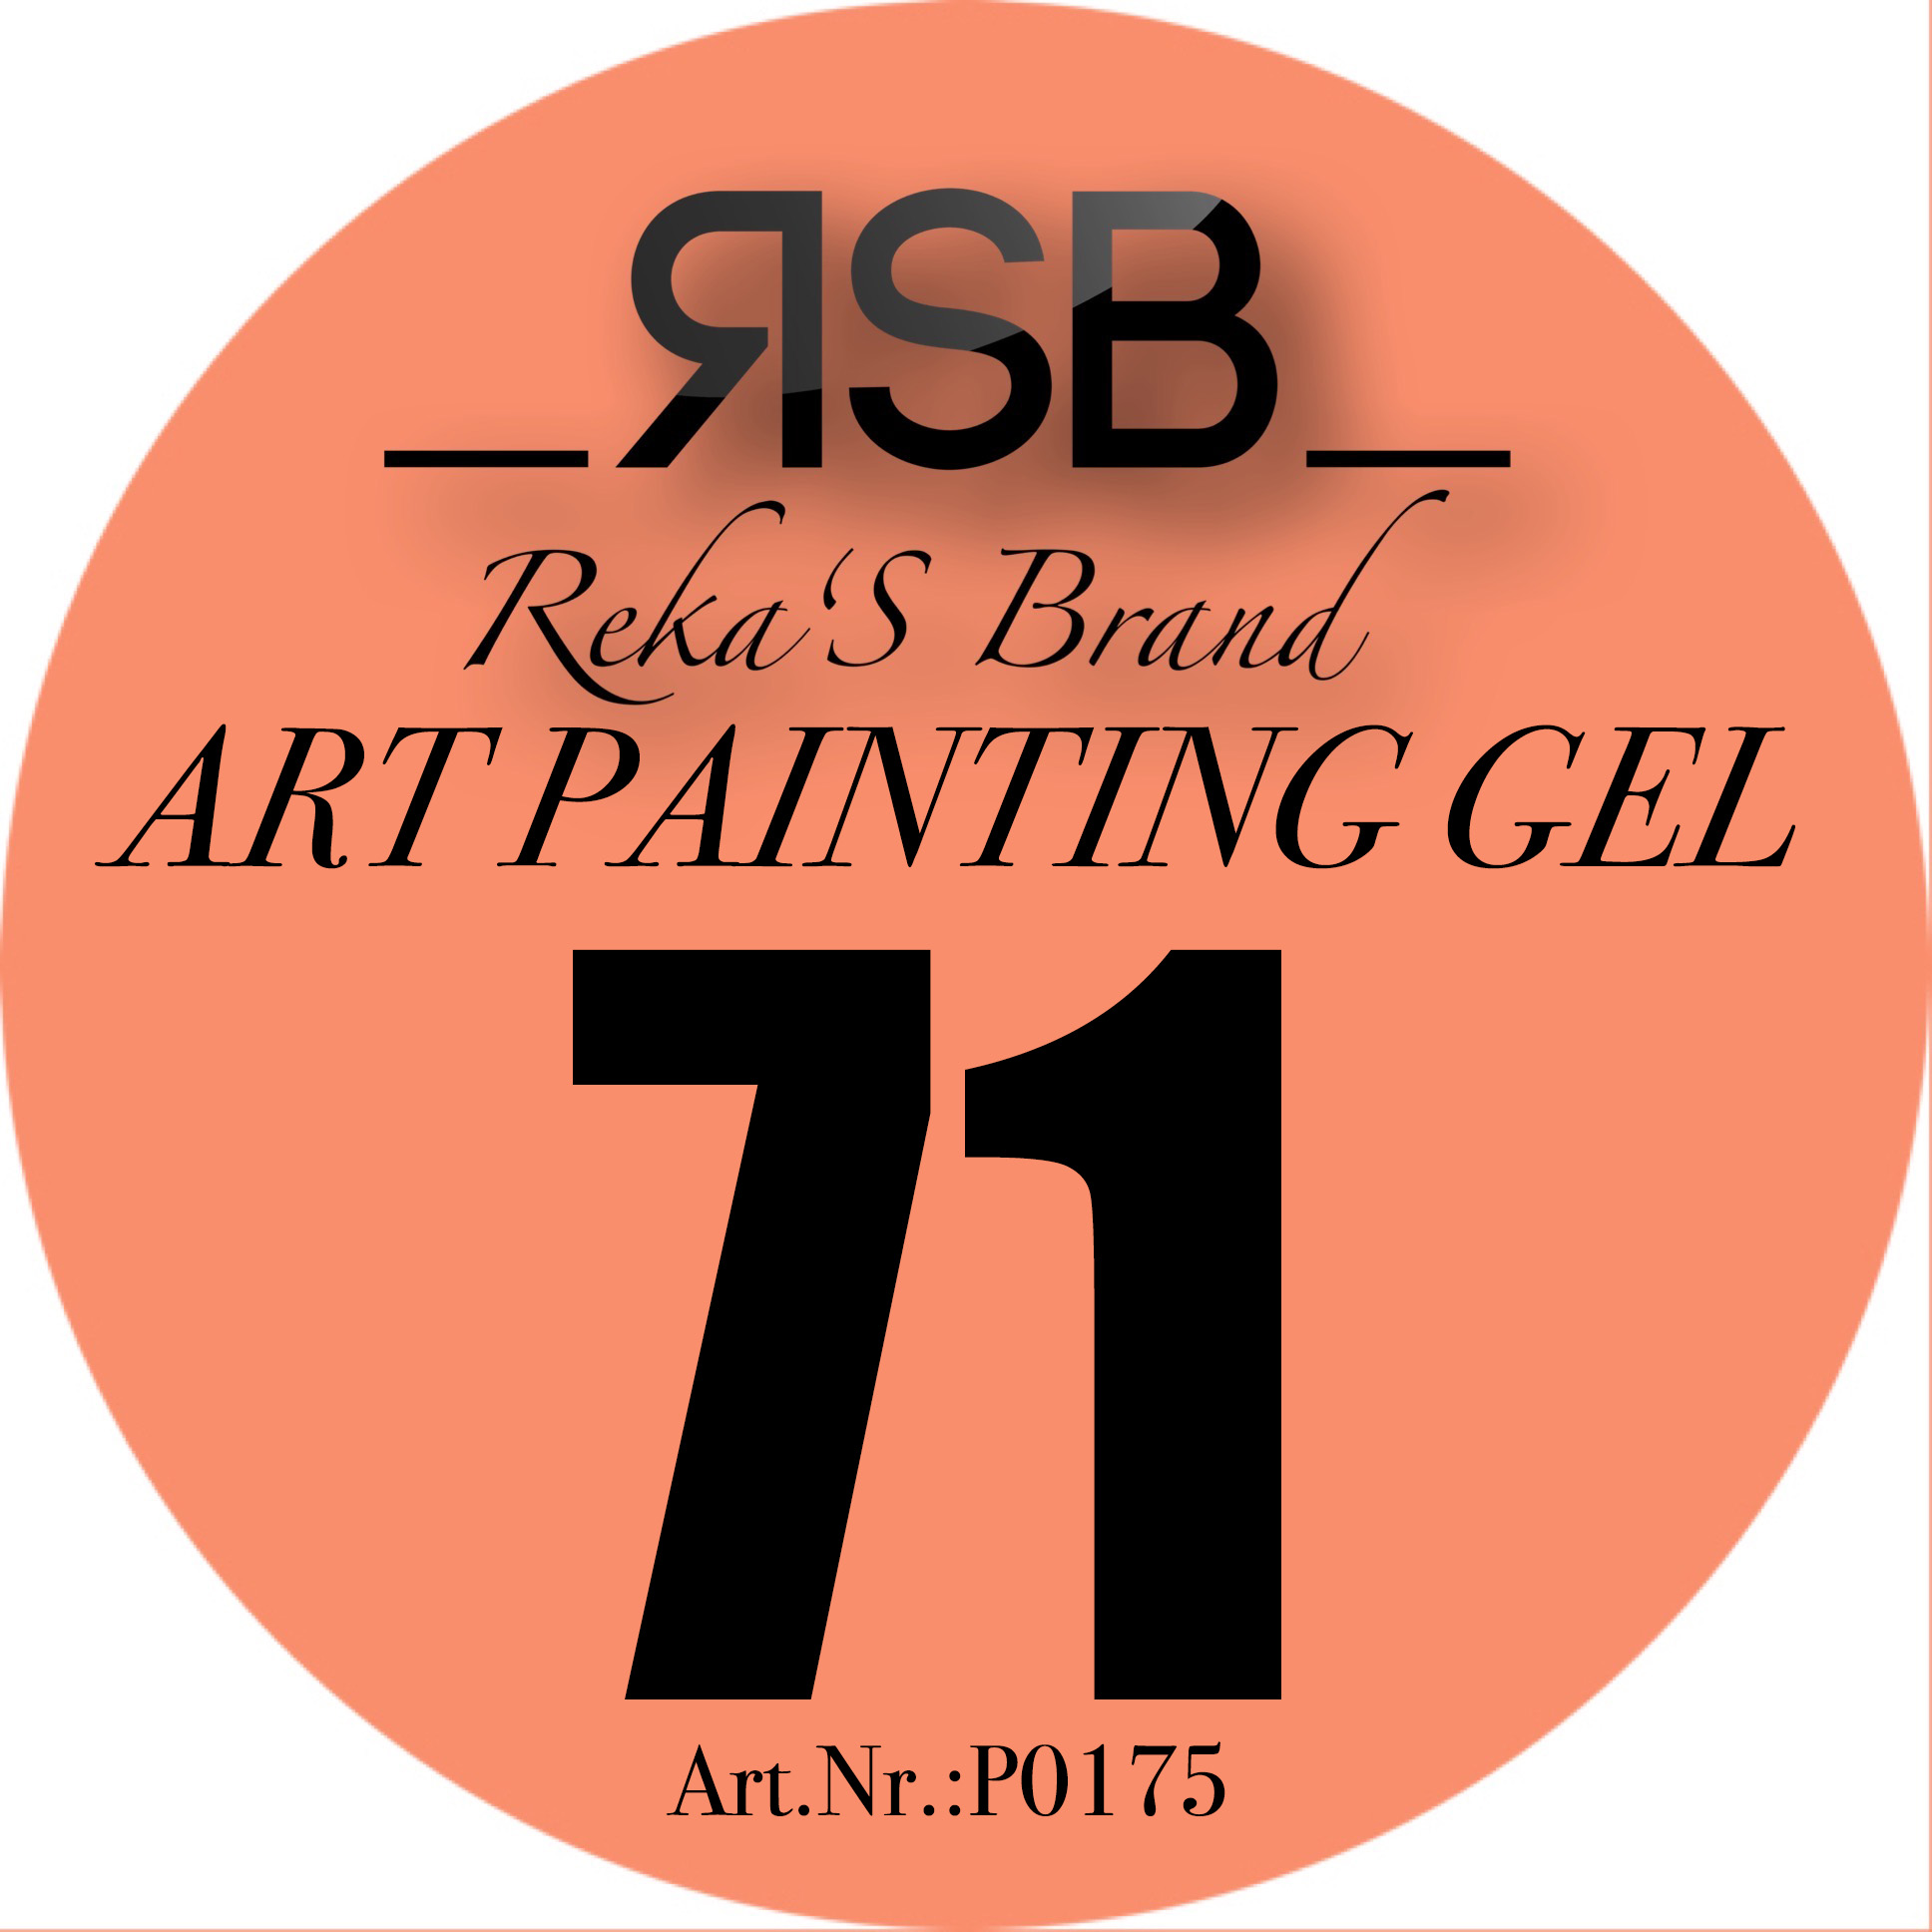 ART PAINTING GEL 71